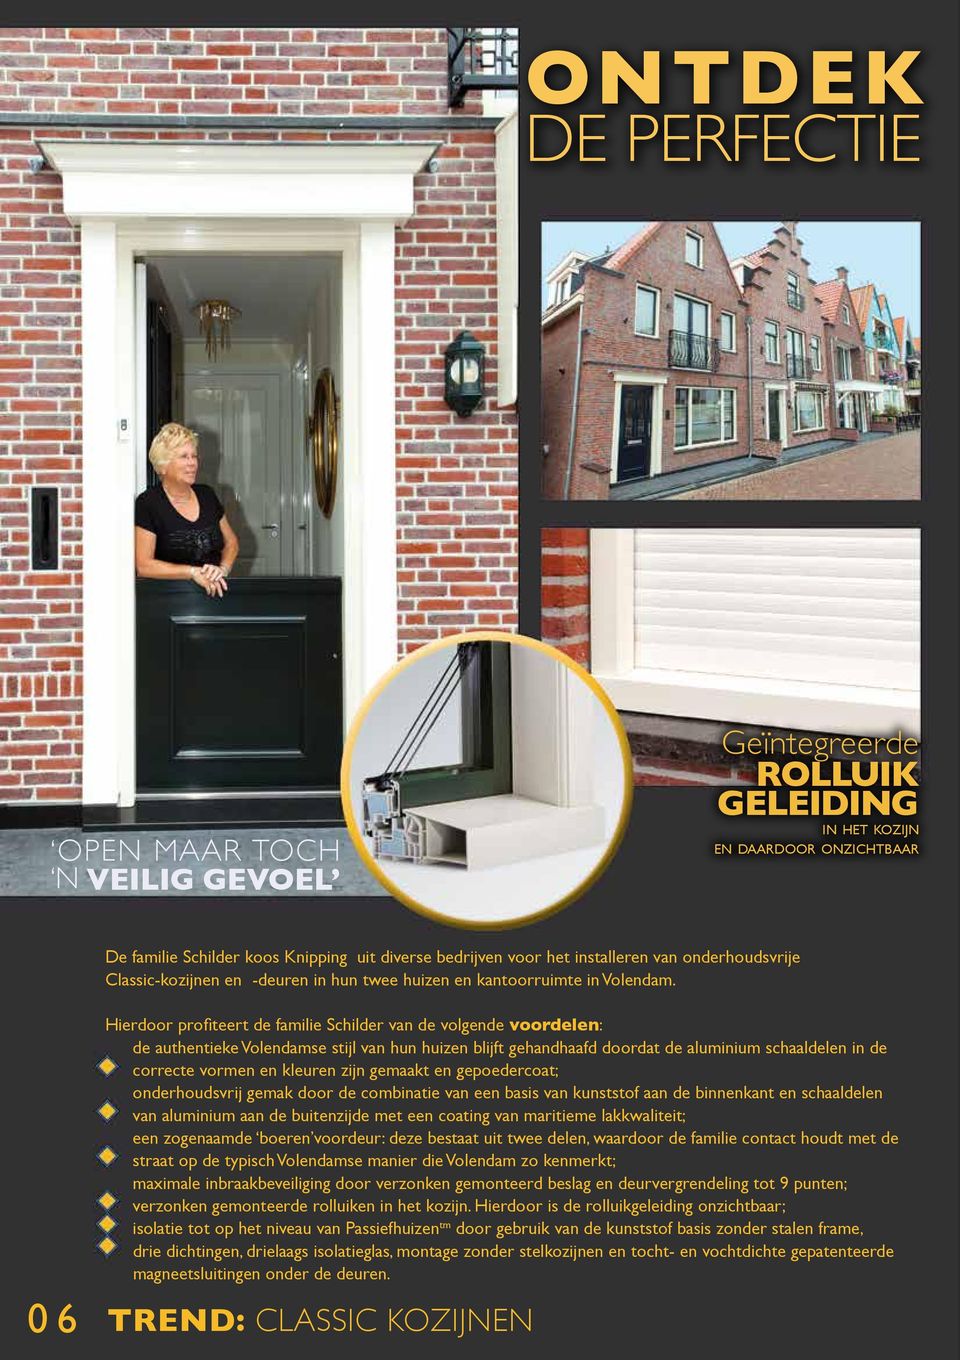 Hierdoor profiteert de familie Schilder van de volgende voordelen: de authentieke Volendamse stijl van hun huizen blijft gehandhaafd doordat de aluminium schaaldelen in de correcte vormen en kleuren